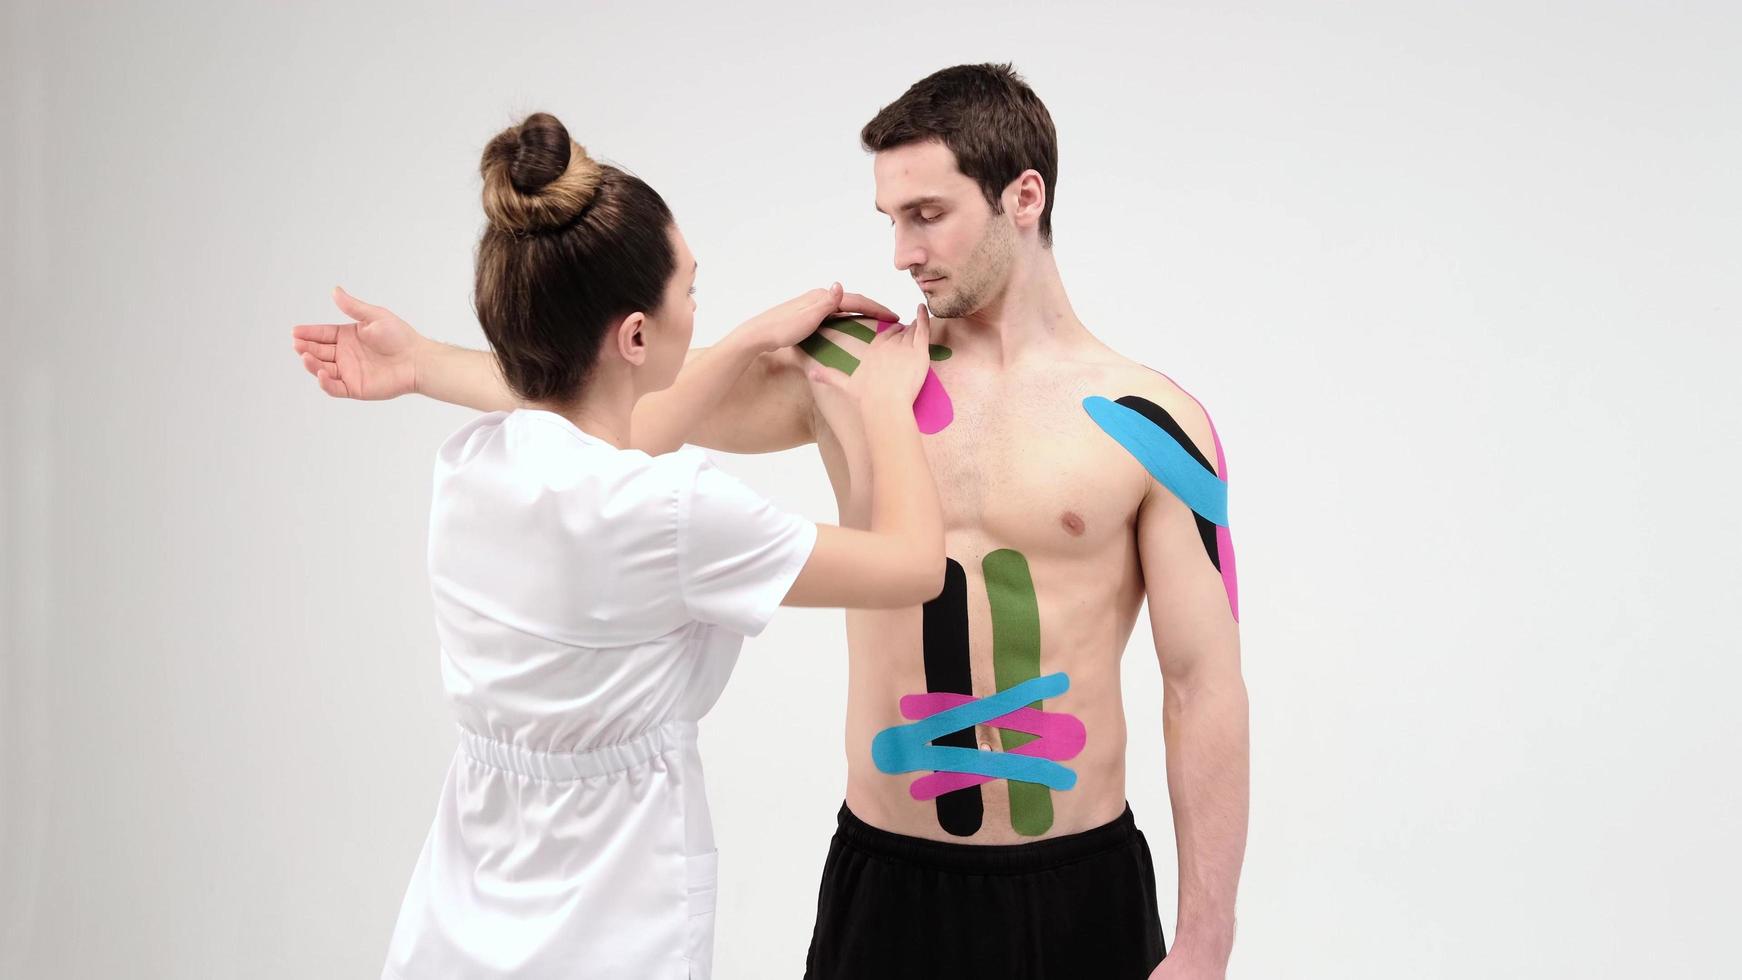 tratamiento de hombros con kinesio tape. Fisioterapeuta aplicando cinta terapéutica elástica a la lesión del hombro del paciente foto